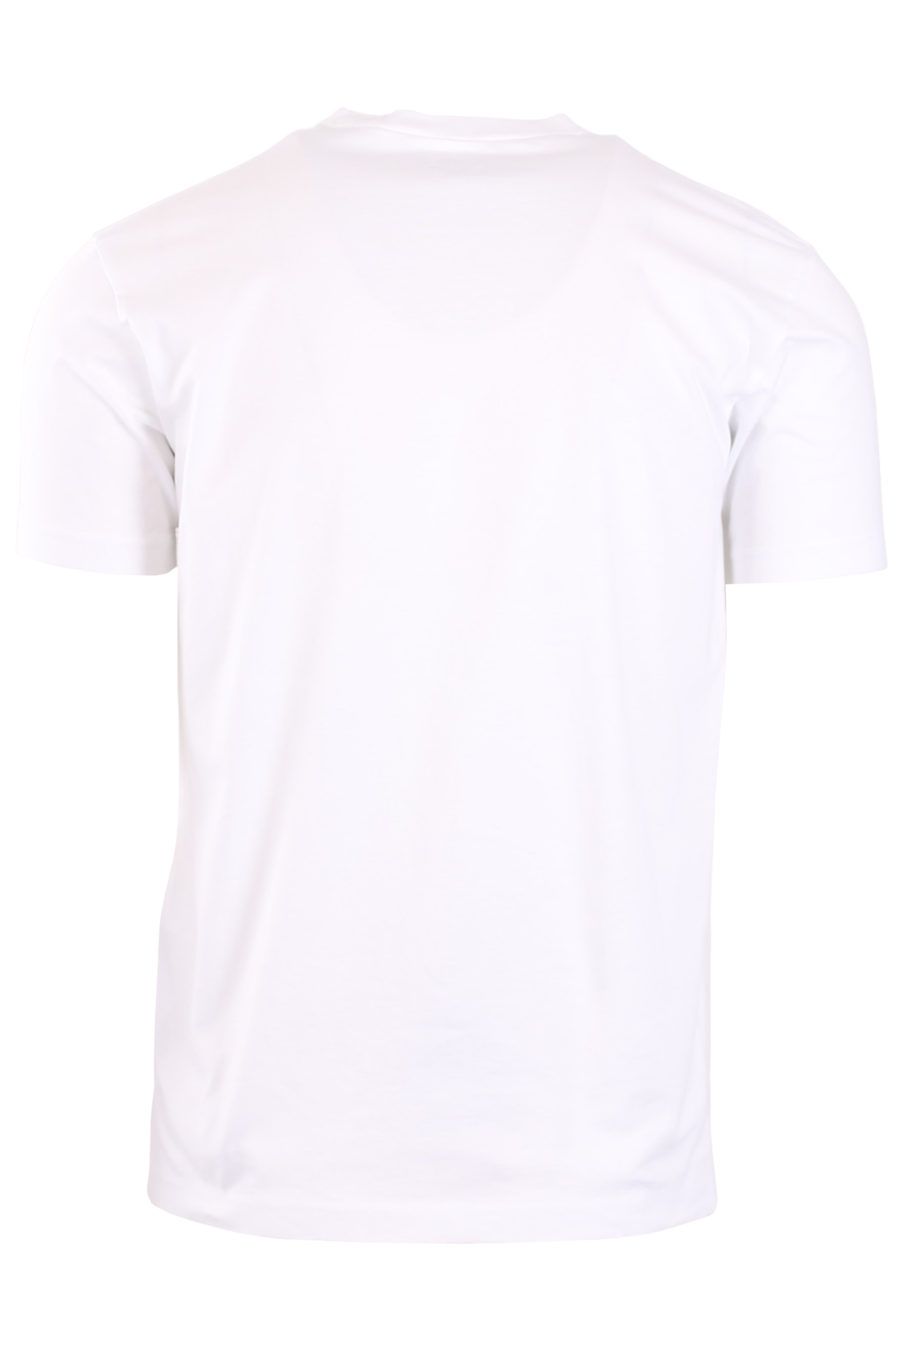 Camiseta blanca con estampado "Ceresio 9 Milano" - b2f2ed8d8cc3a12fcb9d3e2dfeeca0f806c7f66e